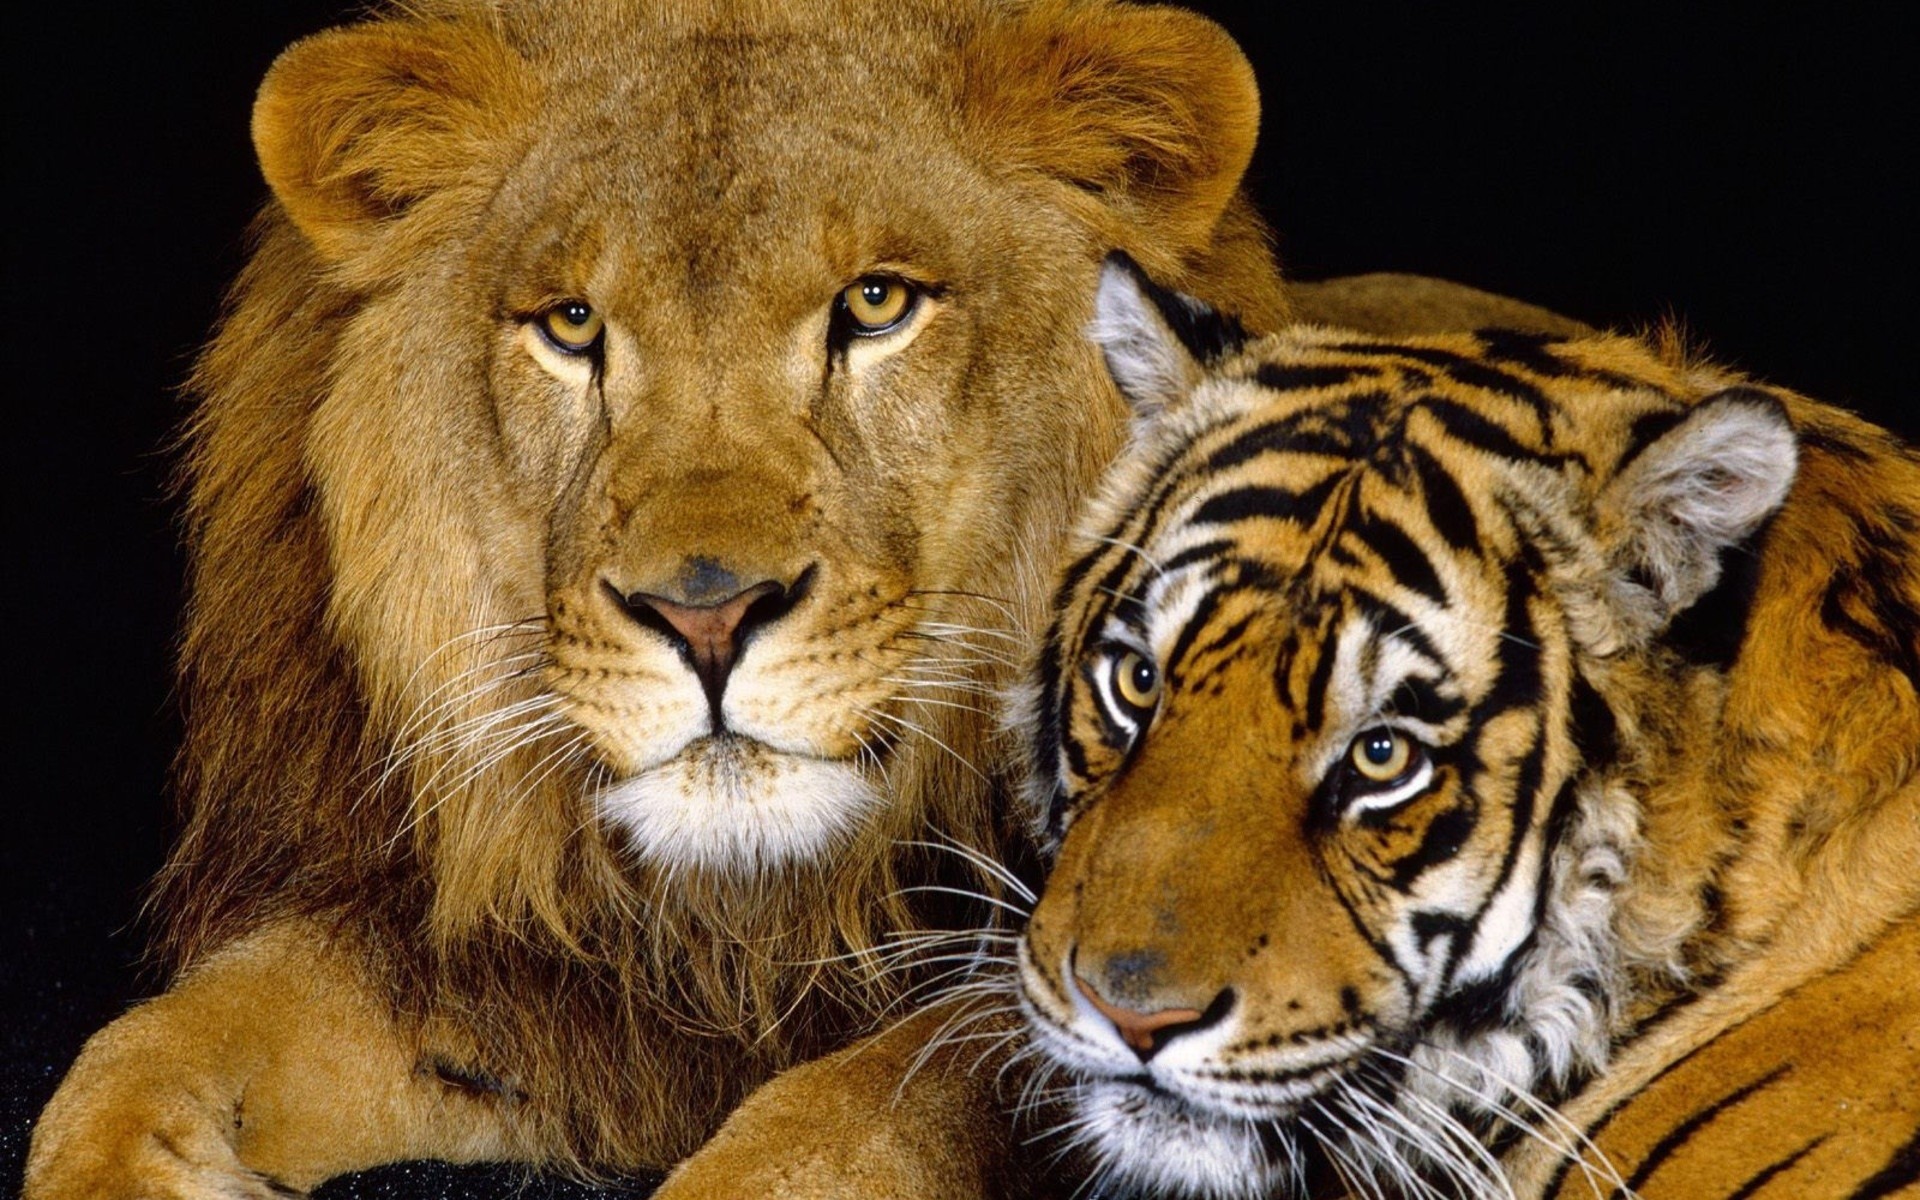 животные кошка дикой природы млекопитающее хищник мясоед охотник животное большой опасность сафари дикий портрет мех джунгли зоопарк глаз пантера тигр лев